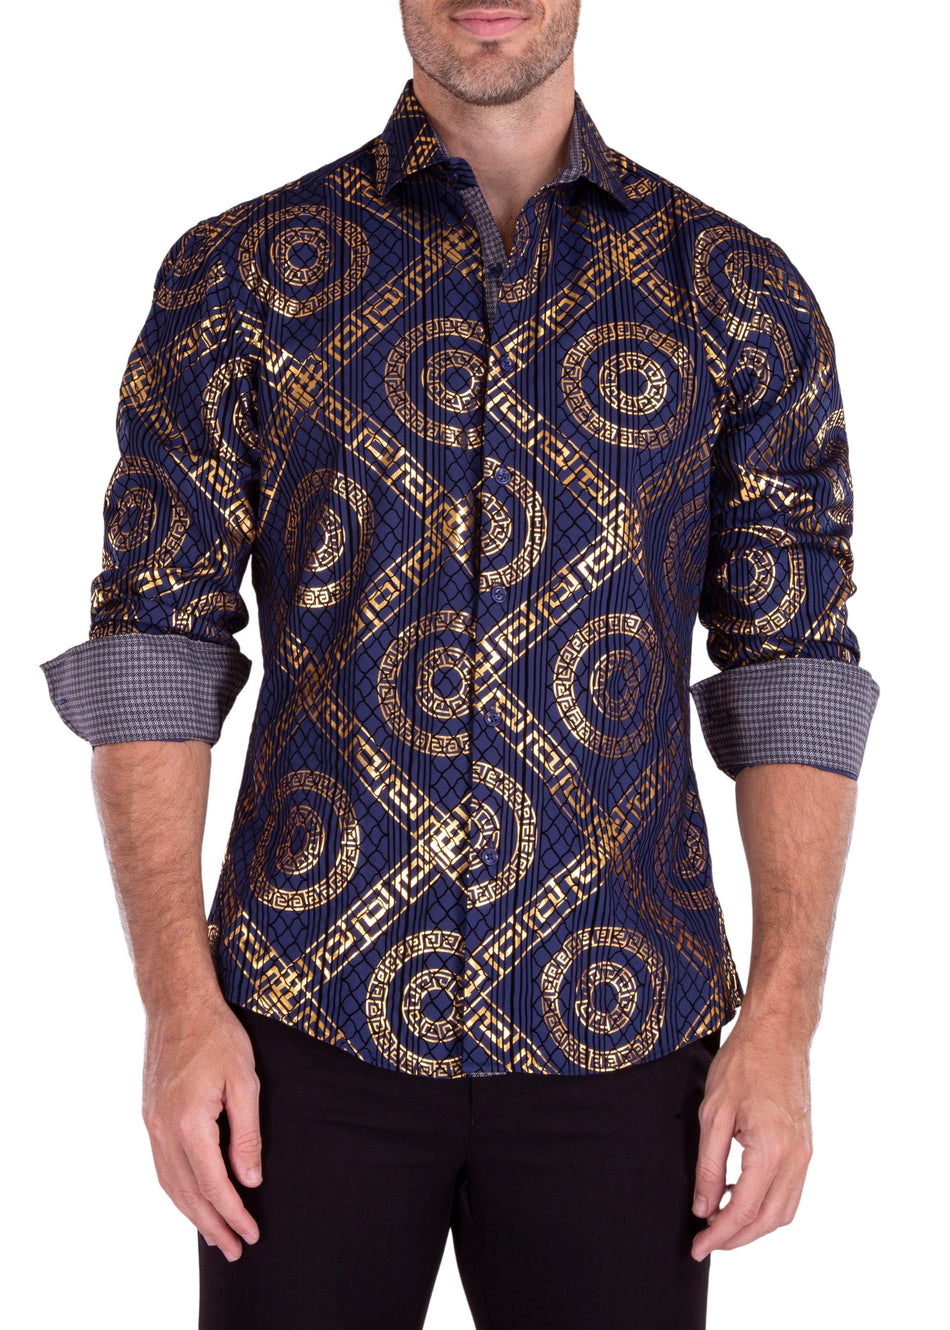 Greek Key Maze Velvet Texture Long Sleeve Dress Shirt Navy